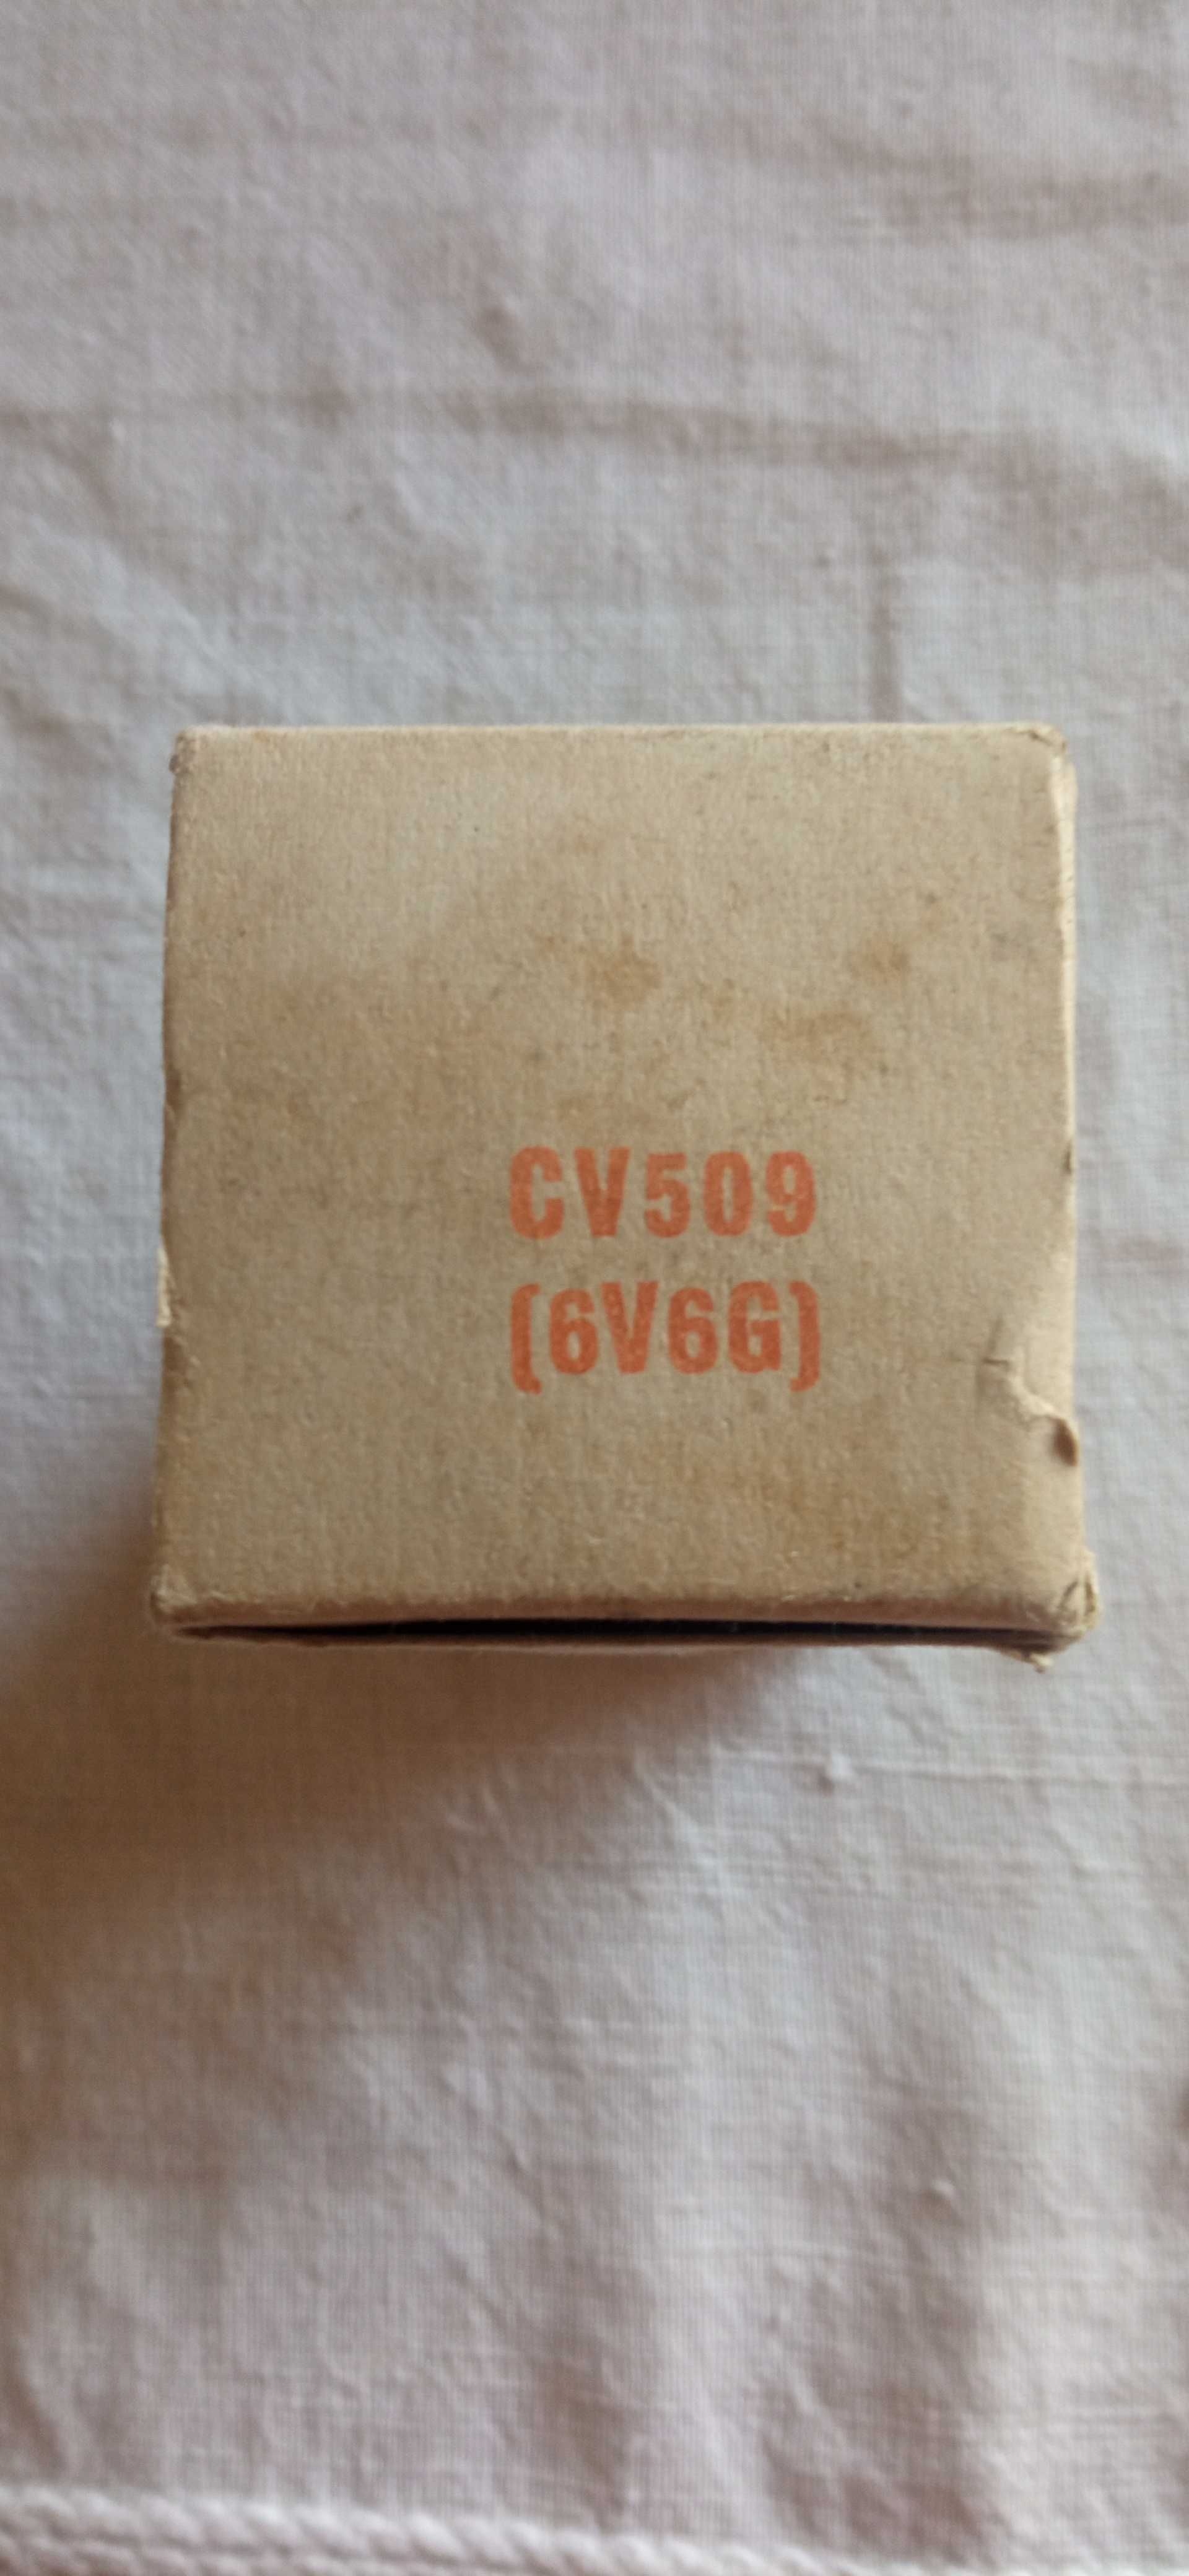 Válvula rádio CV509 ( 6V6G)